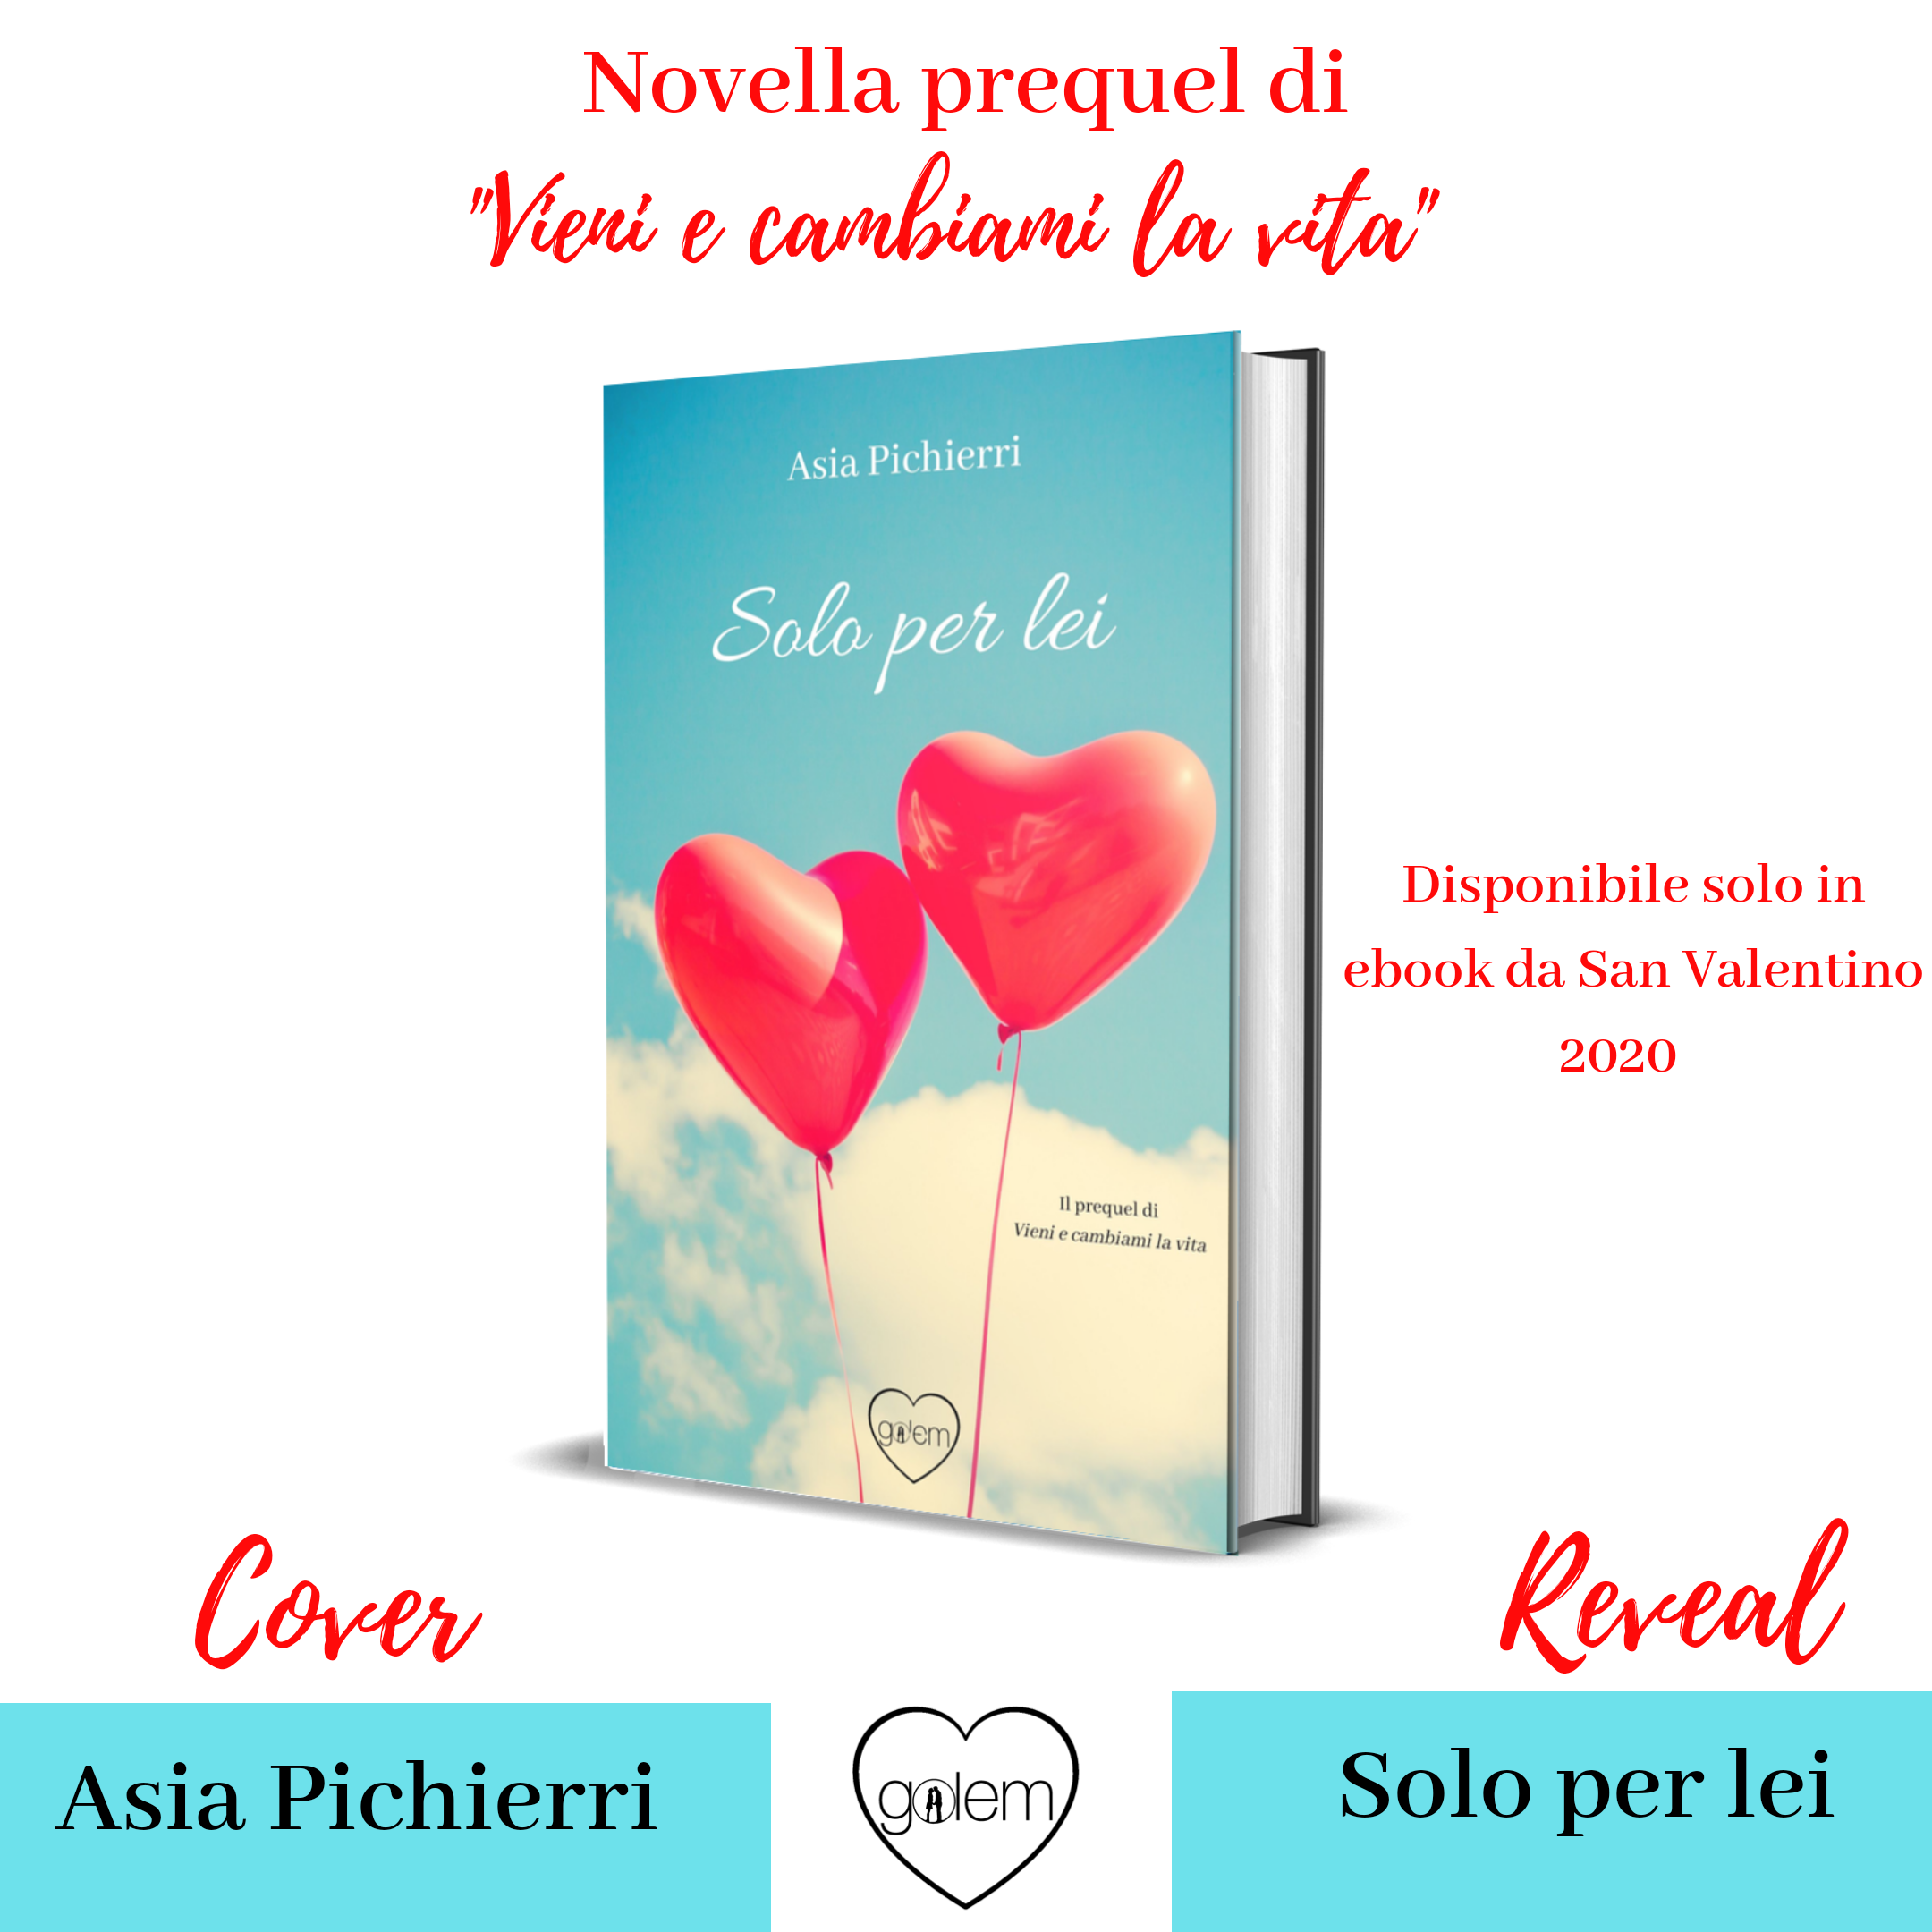 “Solo per lei” la novella romance di Asia Pichierri